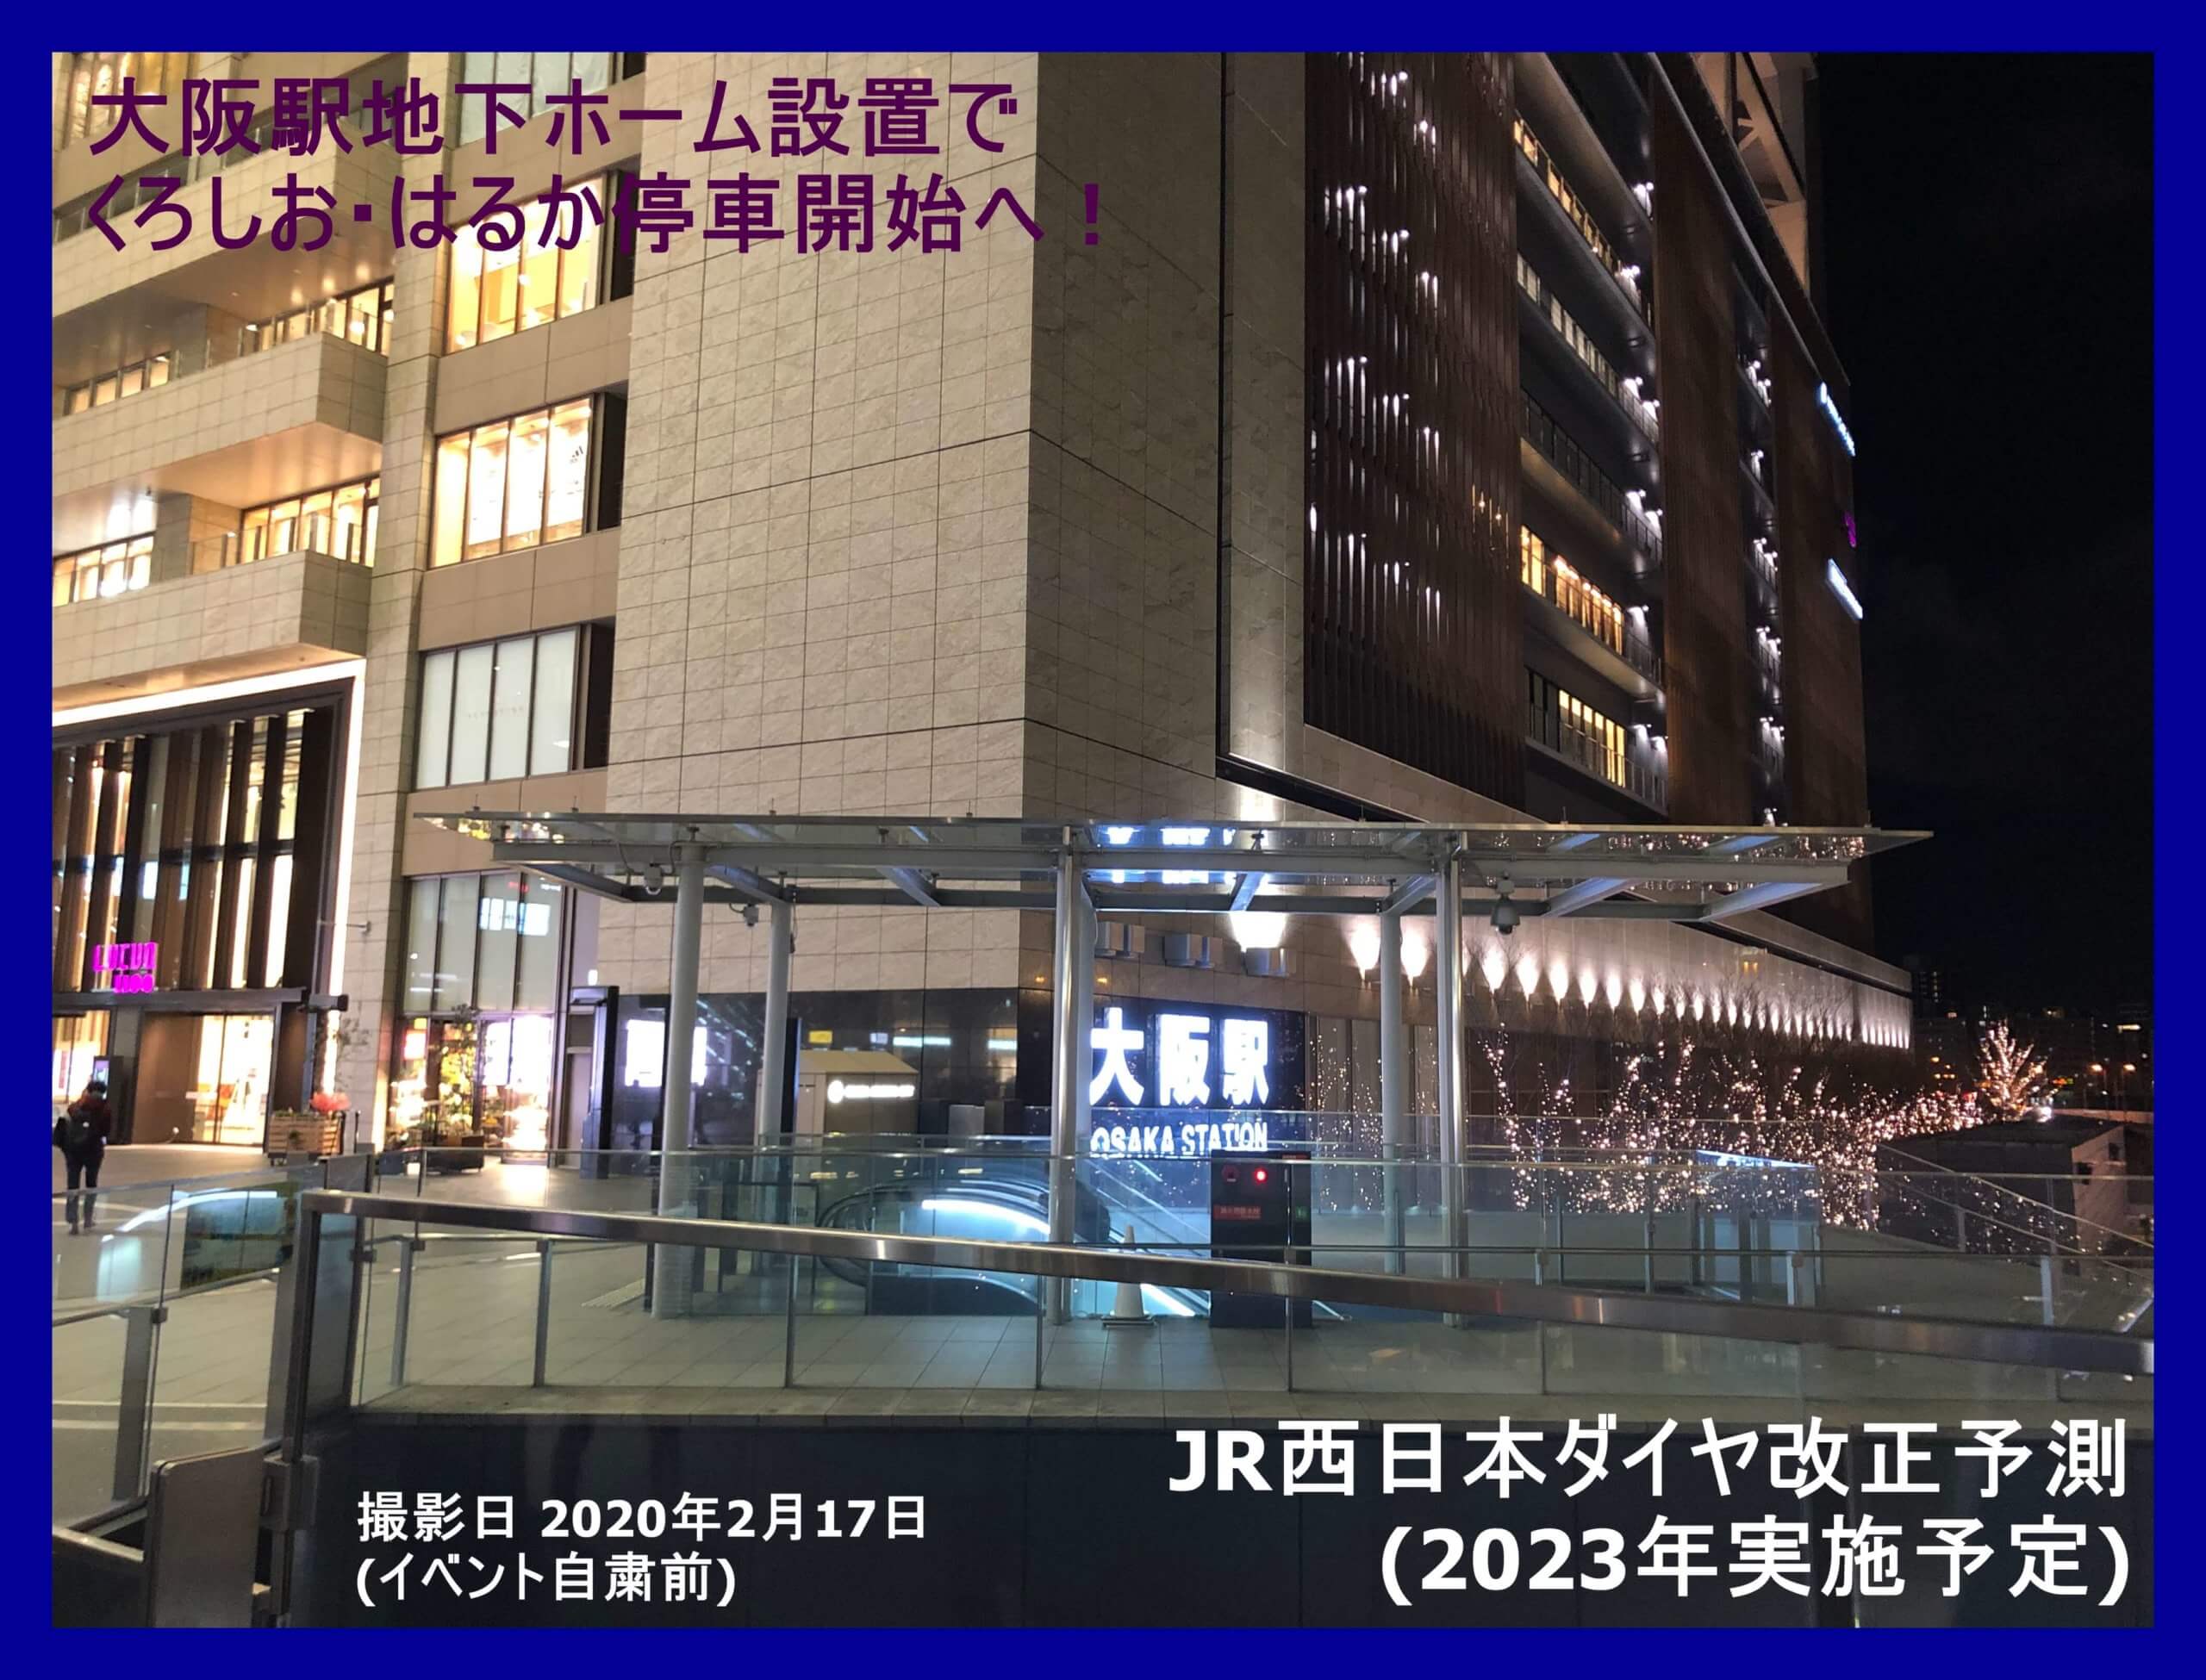 地下ホーム設置でくろしお はるかの大阪停車開始へ Jr西日本ダイヤ改正予測 23年3月予定 鉄道時刻表ニュース